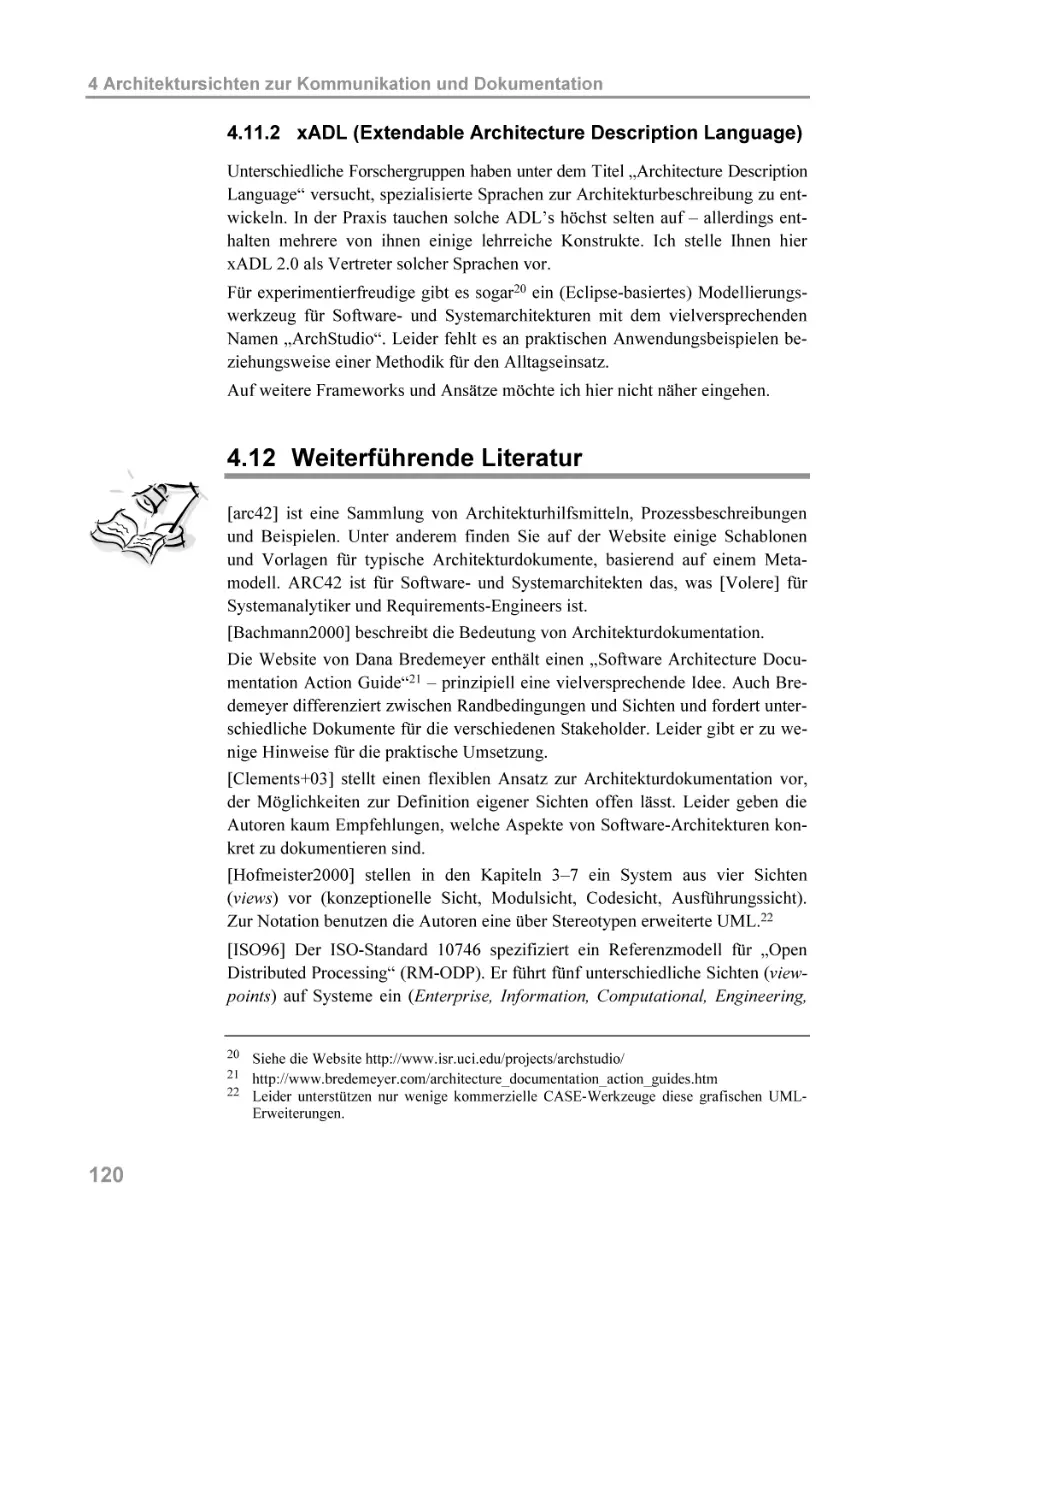 4.11.2 xADL (Extendable Architecture Description Language)
4.12 Weiterführende Literatur